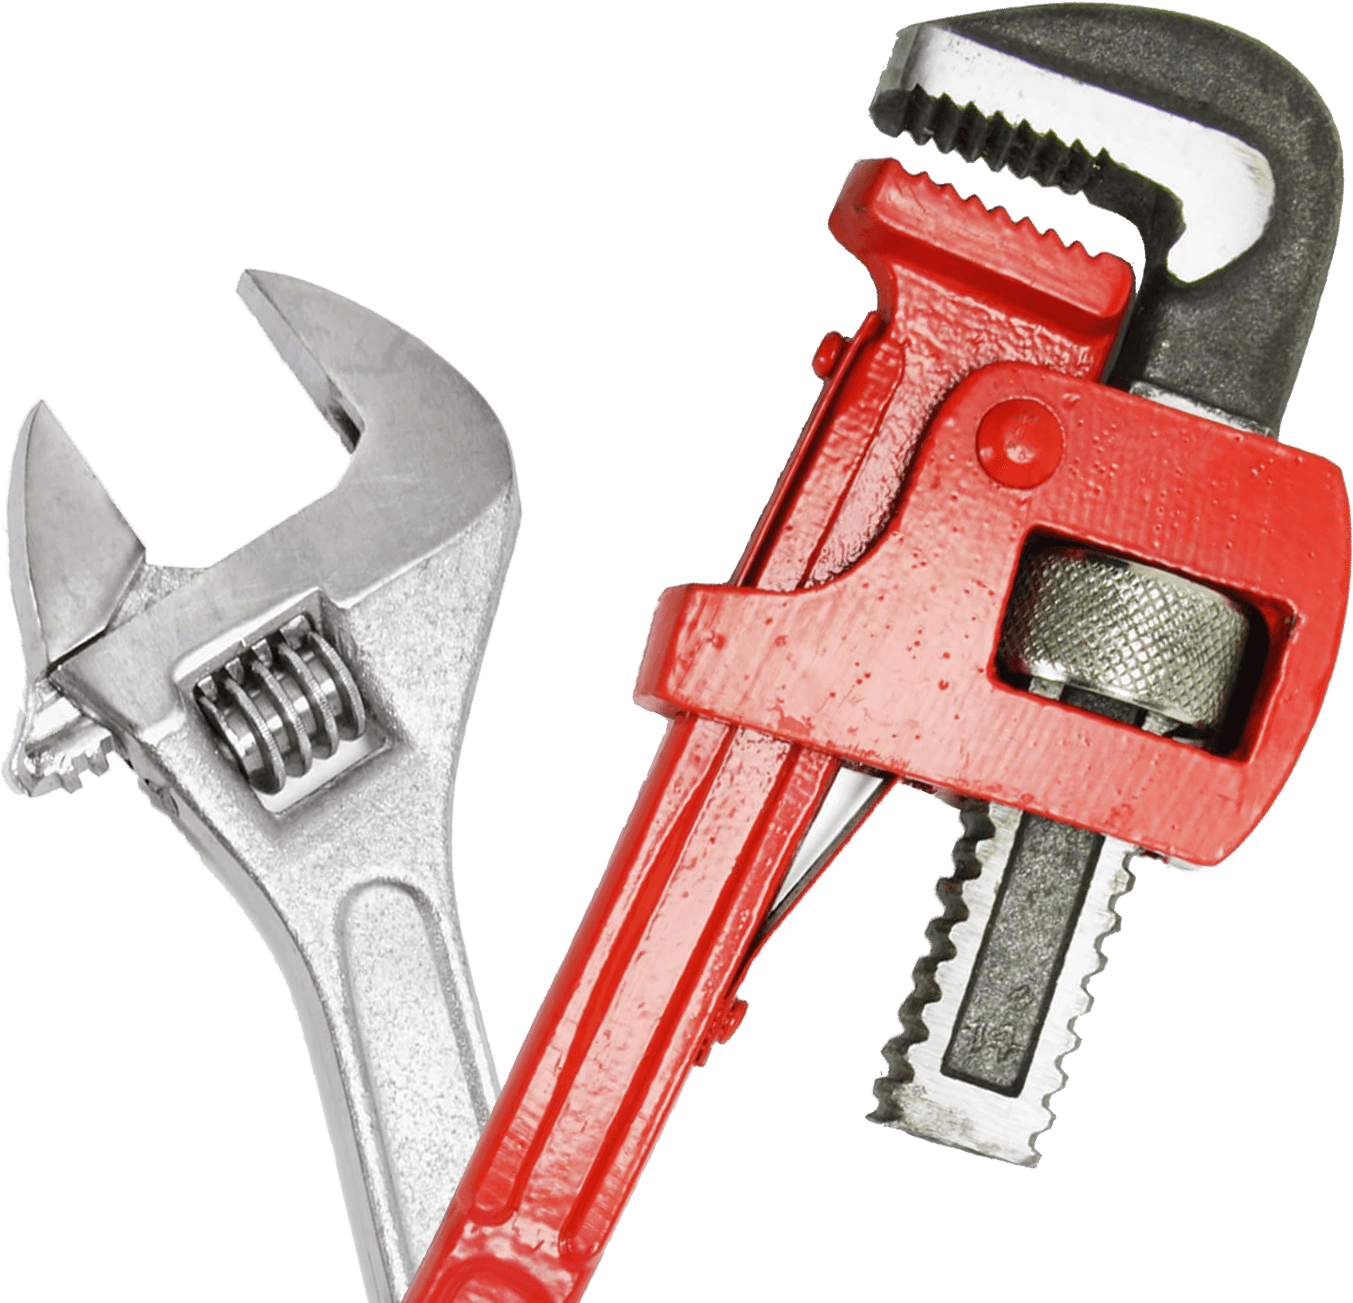 Plumbing tools — Plumbing contractor in Spanaway, WA